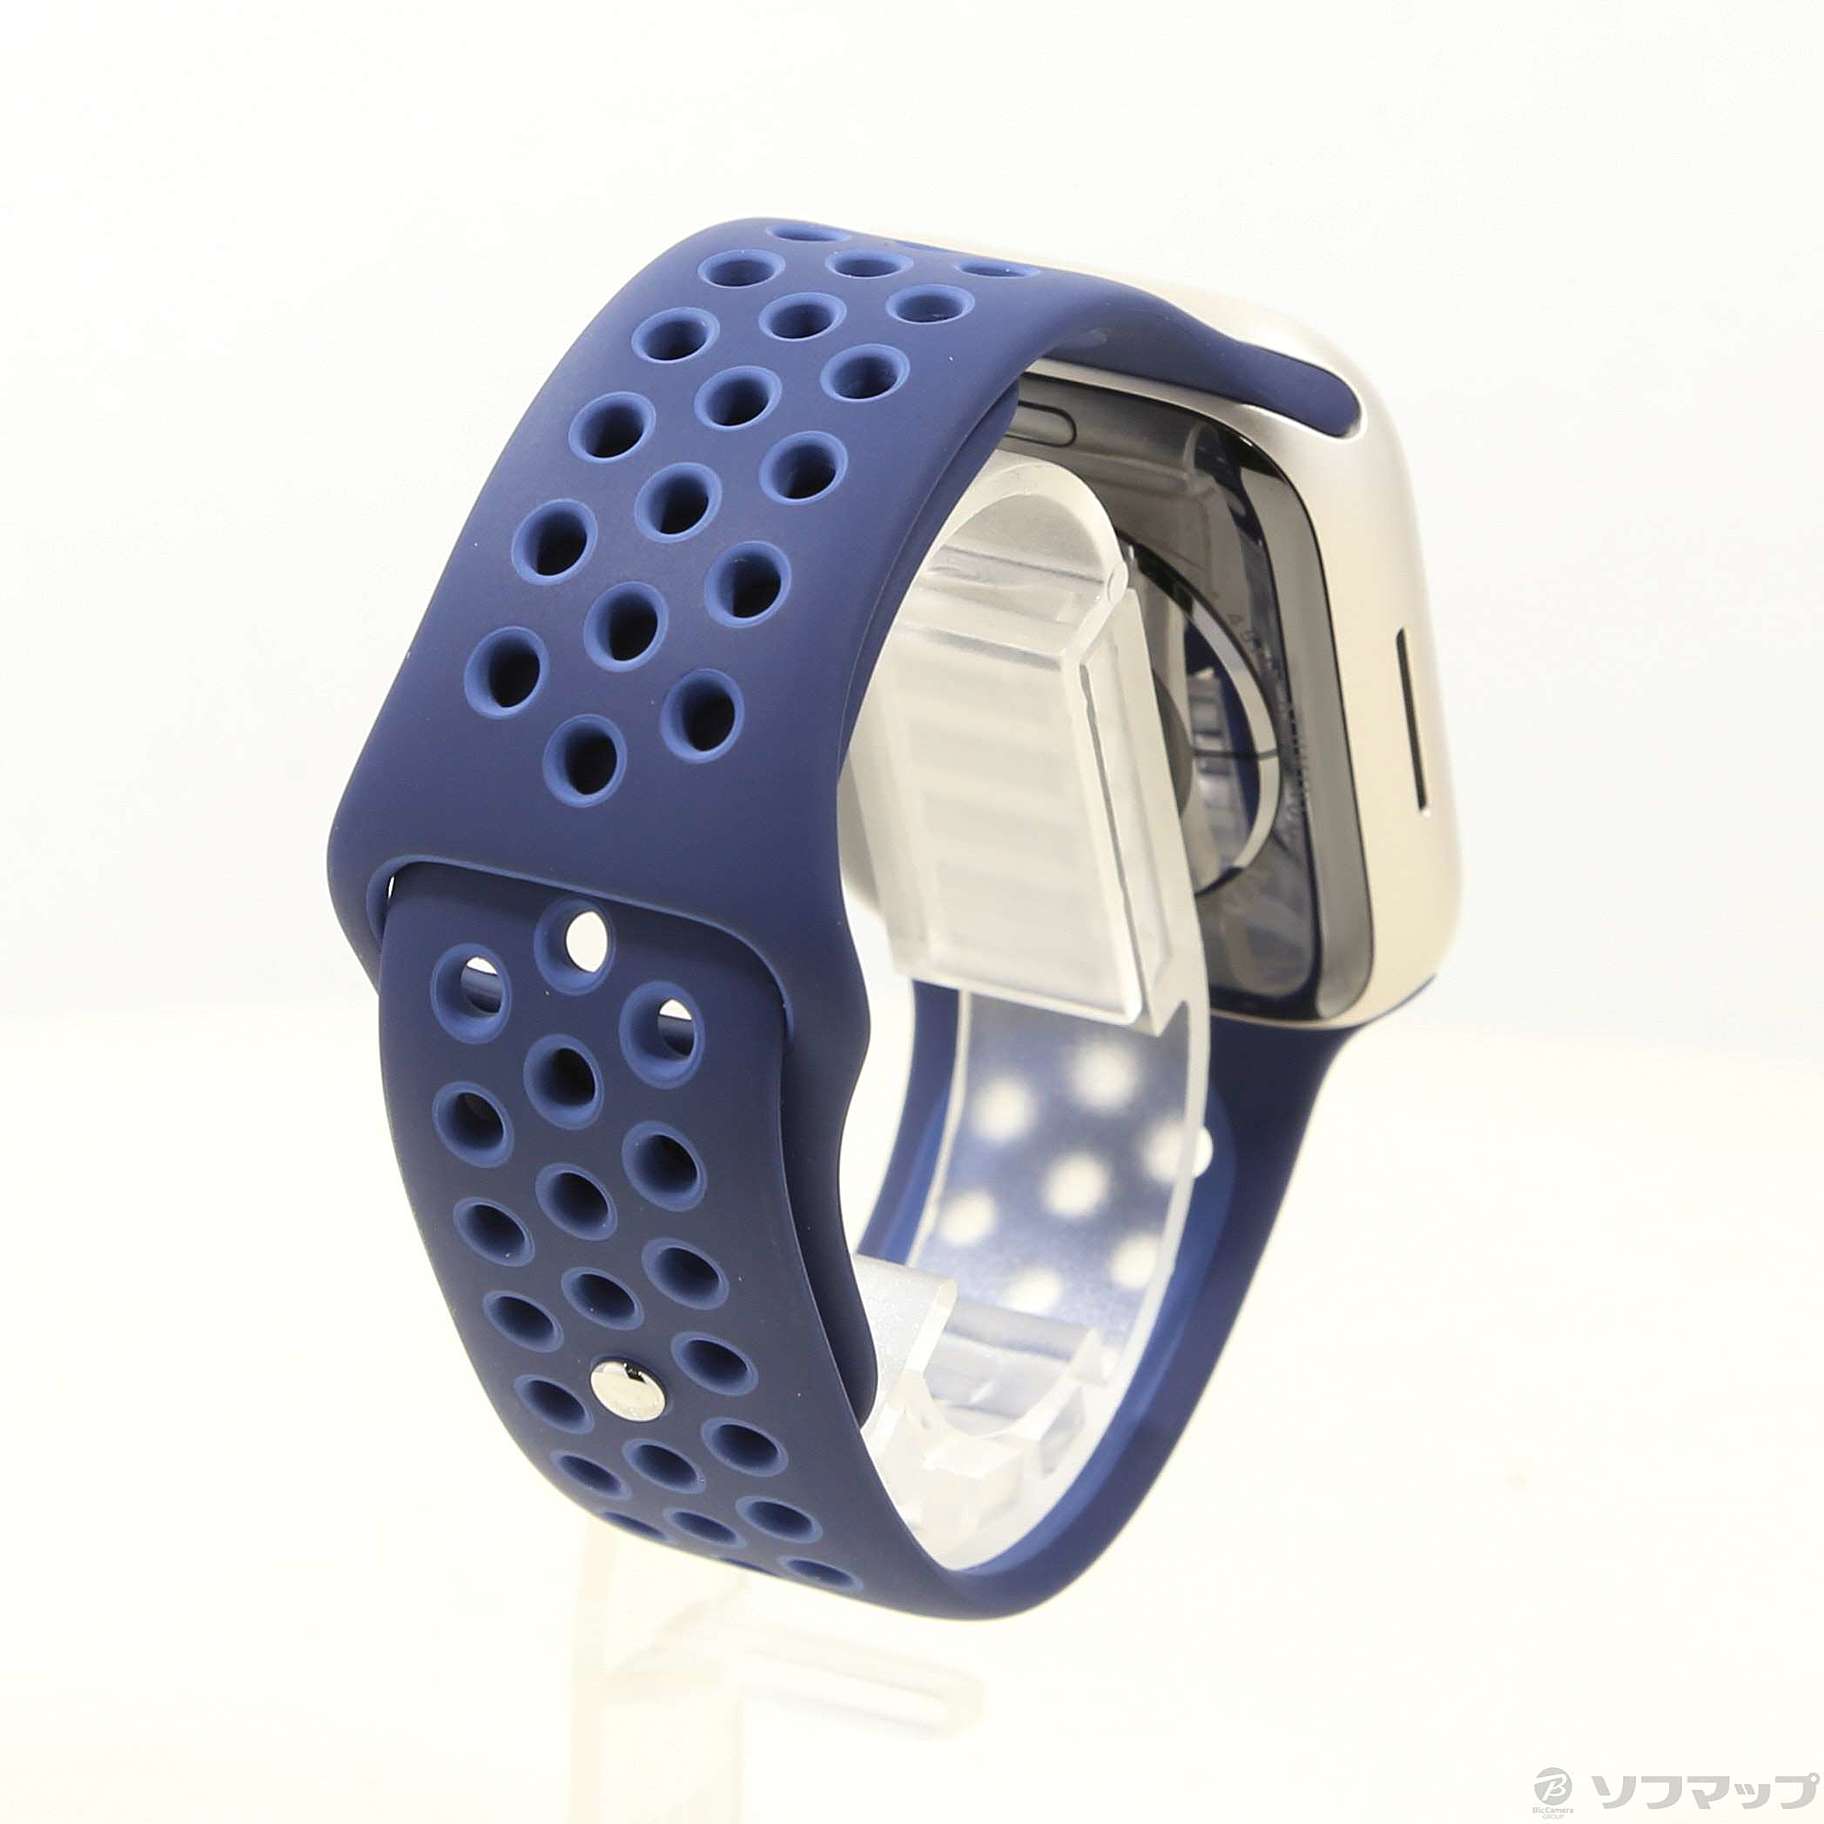 Apple Watch Series 7 (GPSモデル) 45mmスターライト